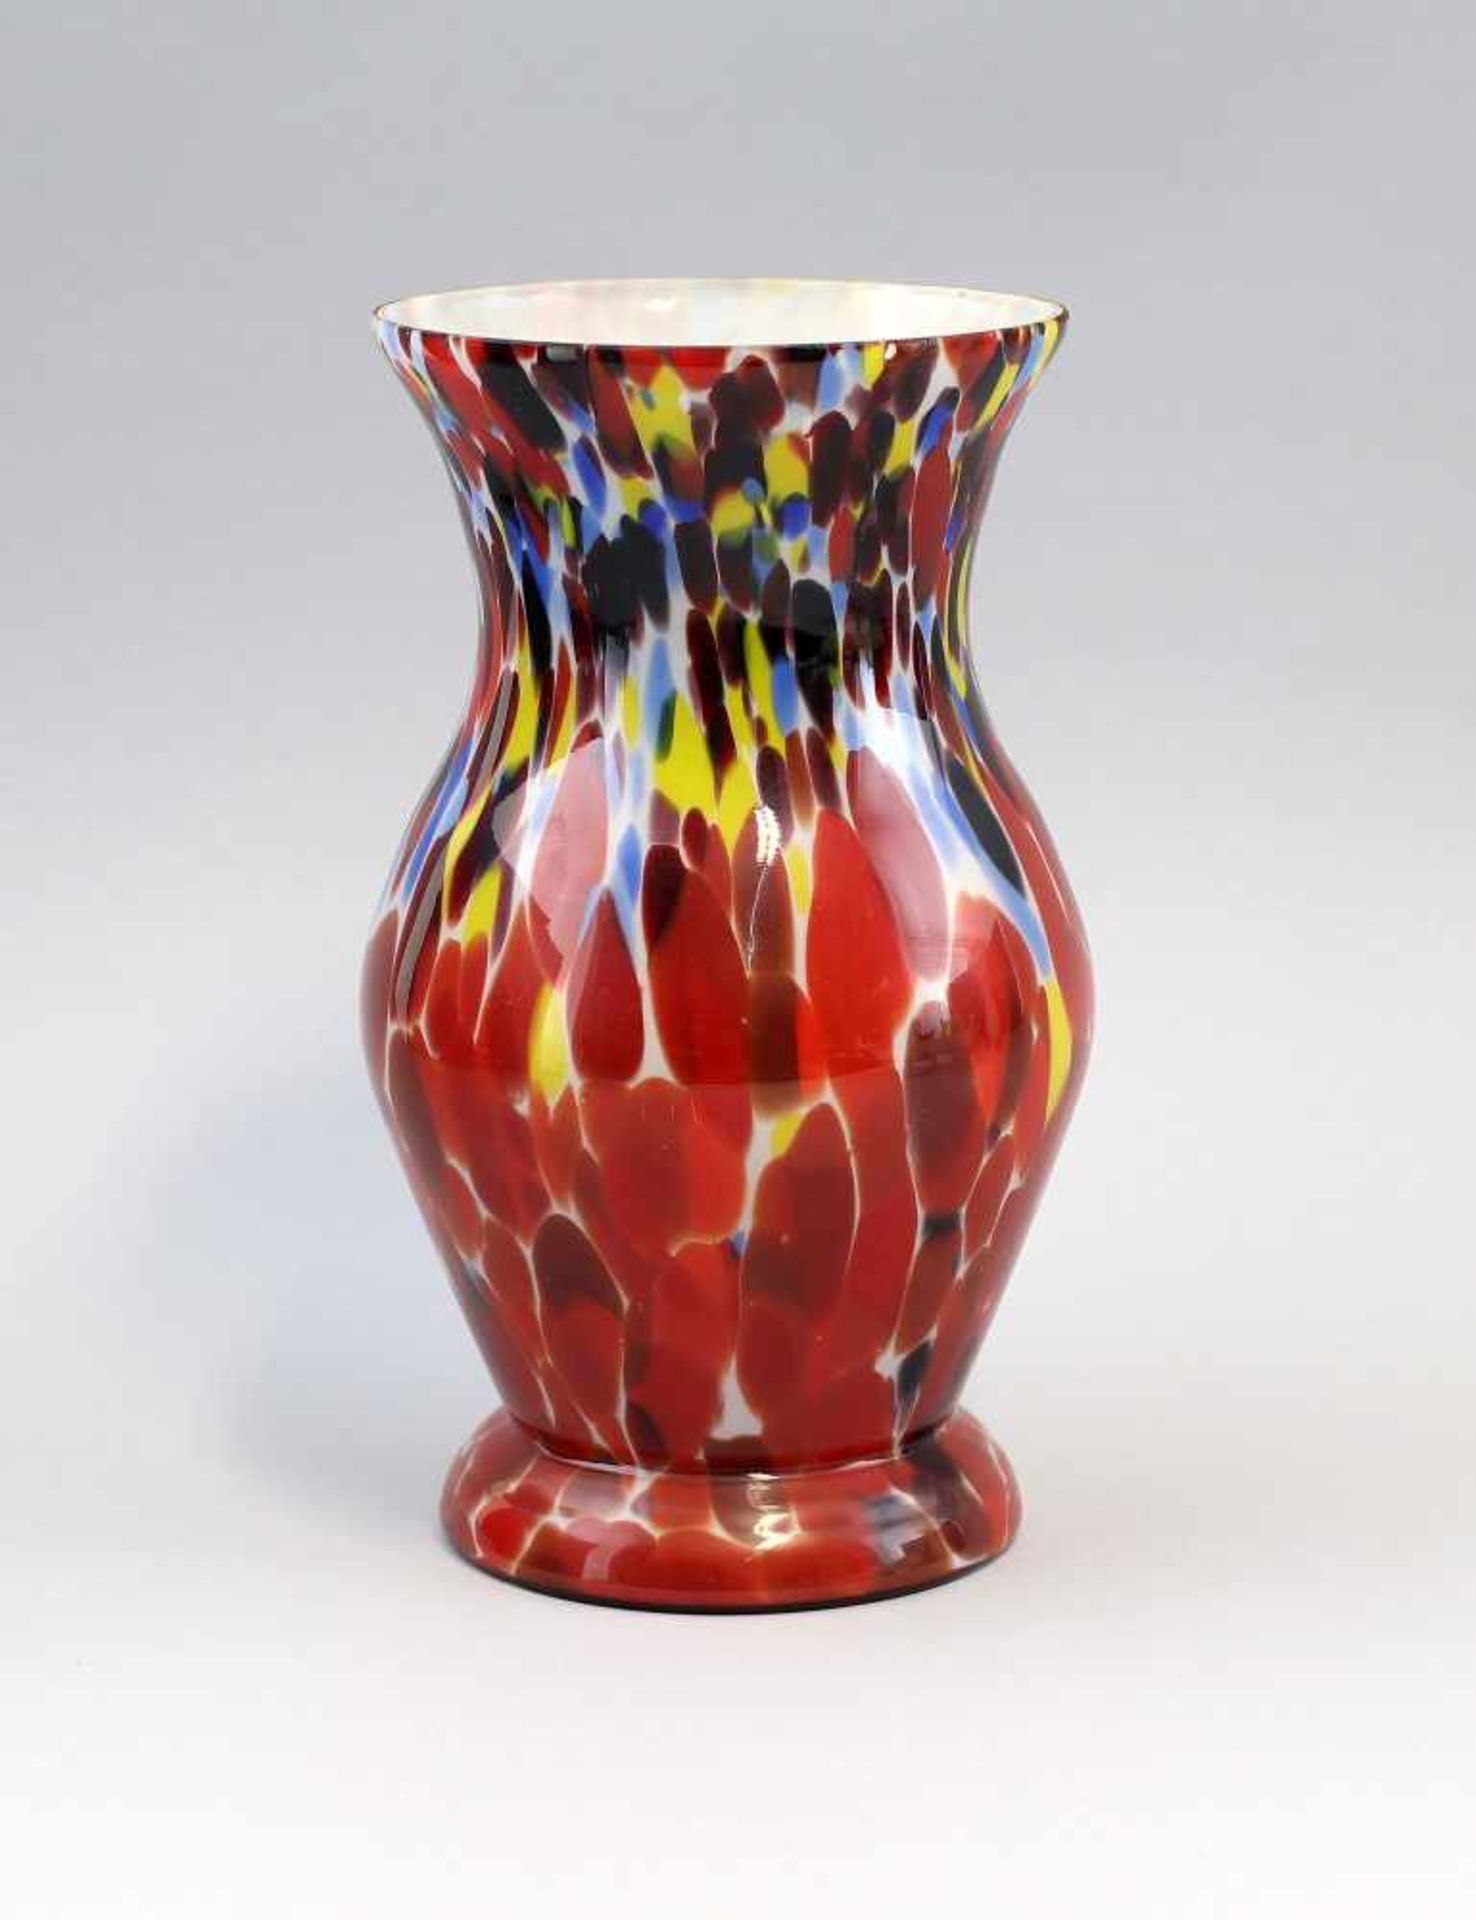 Vase Endglasum 1910, farbloses Glas mit blauen, gelben, weißen und roten, partiell verzogenen